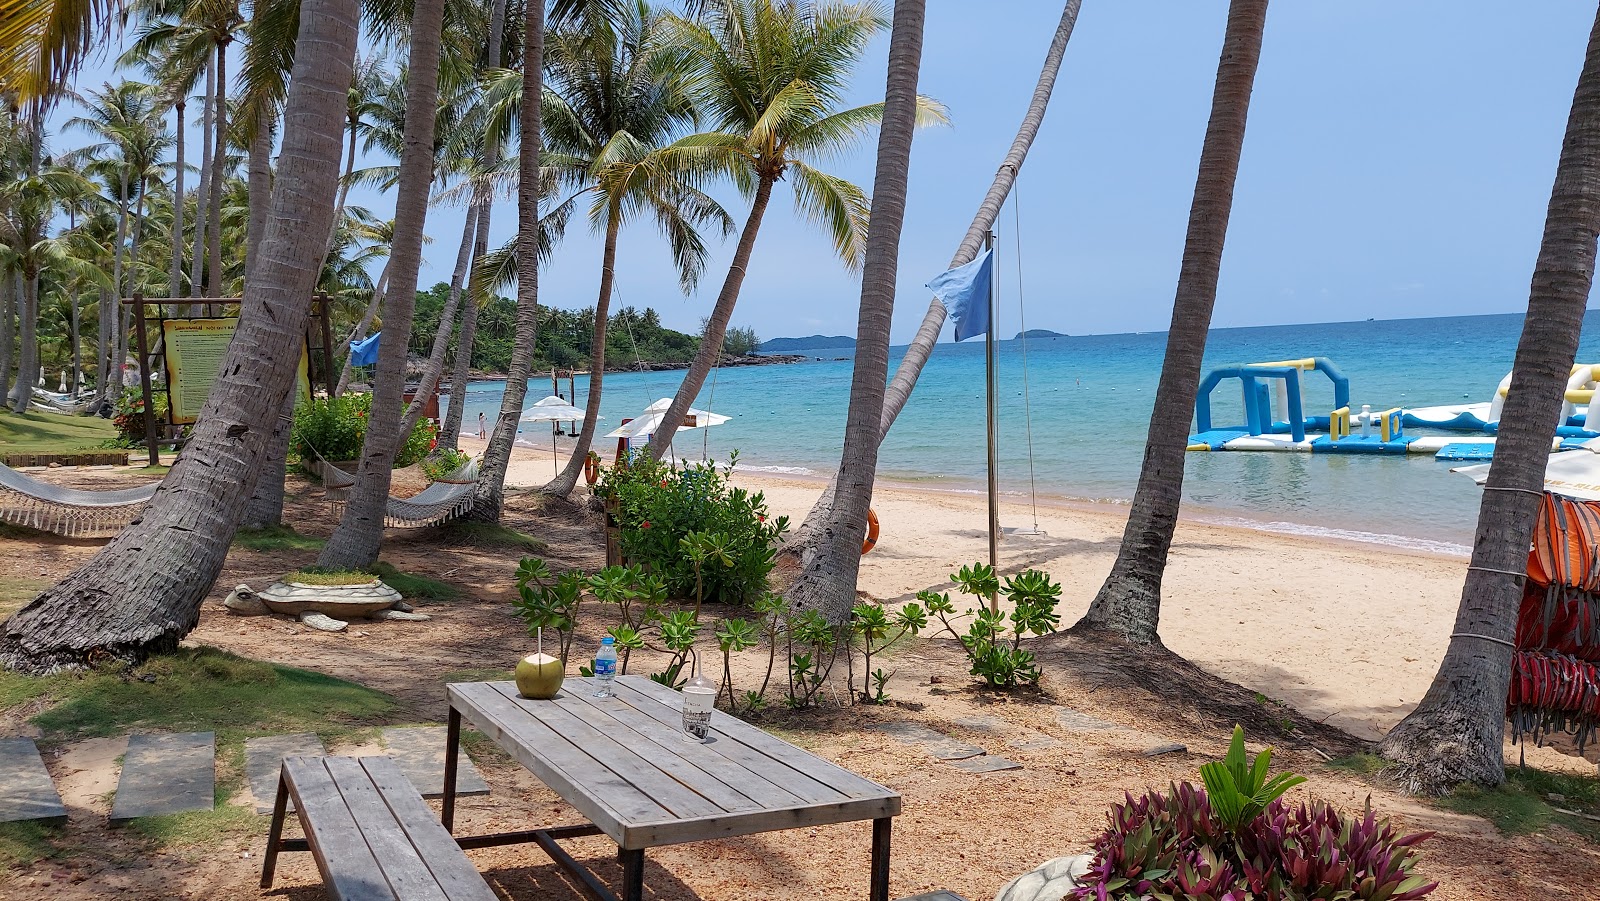 Foto de Sunworld Beach - lugar popular entre los conocedores del relax